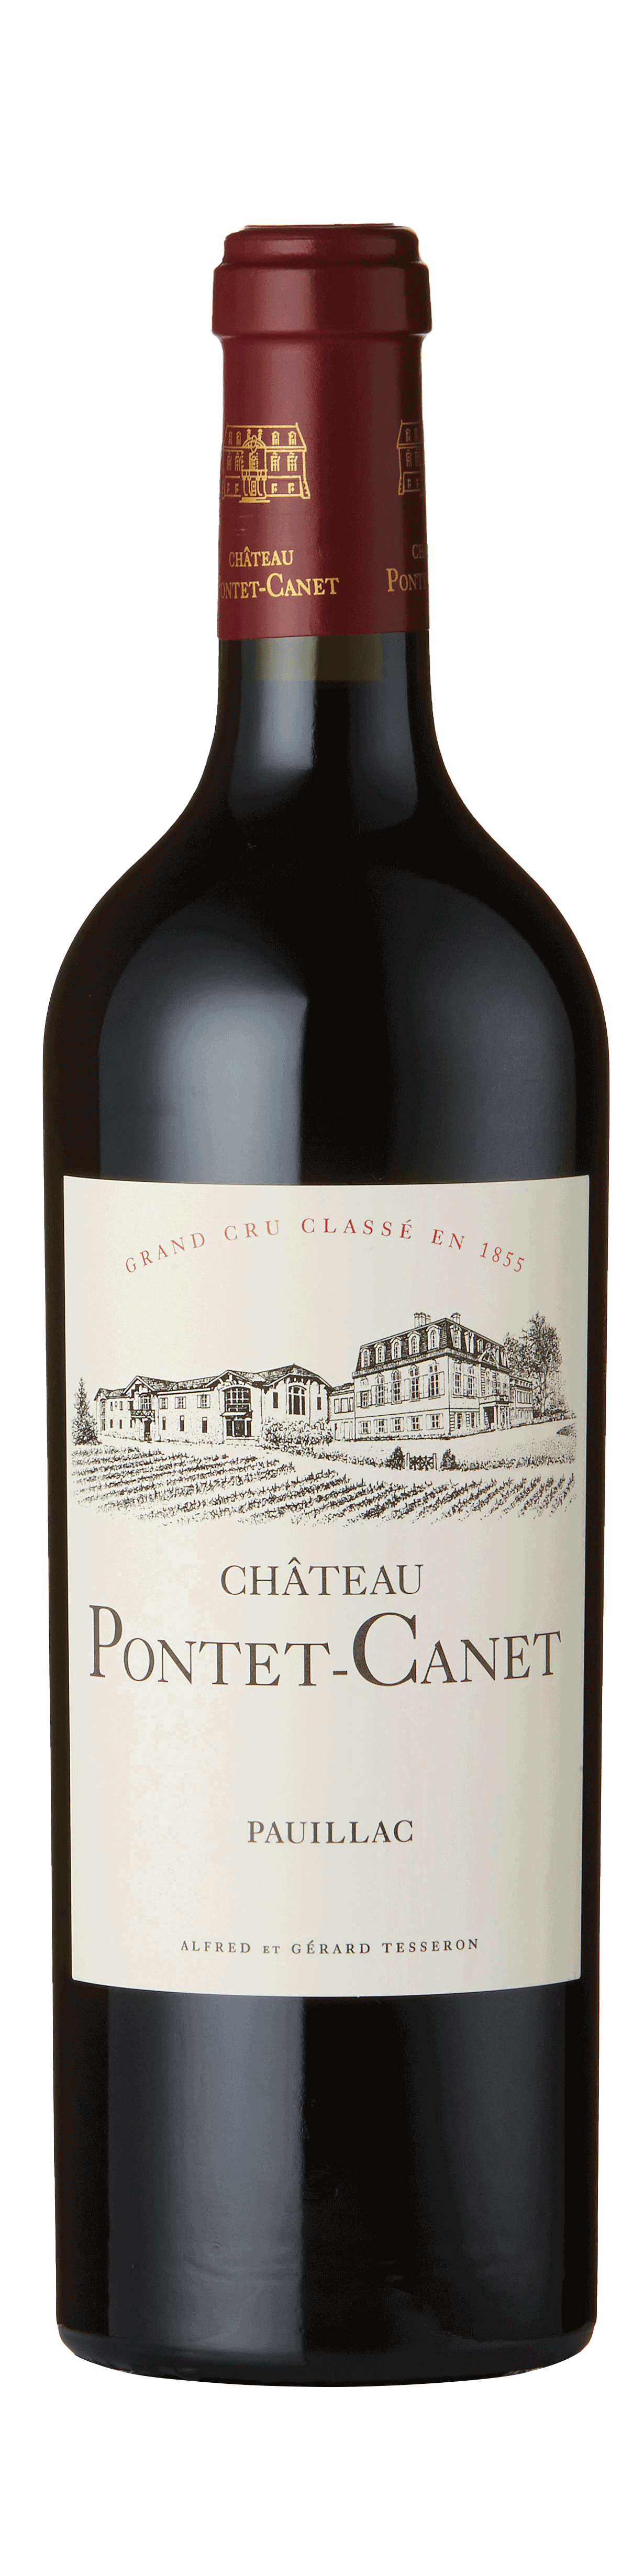 Bottle shot - Château Pontet-Canet Bio 5ème Cru Classé, Pauillac, Bordeaux, France.